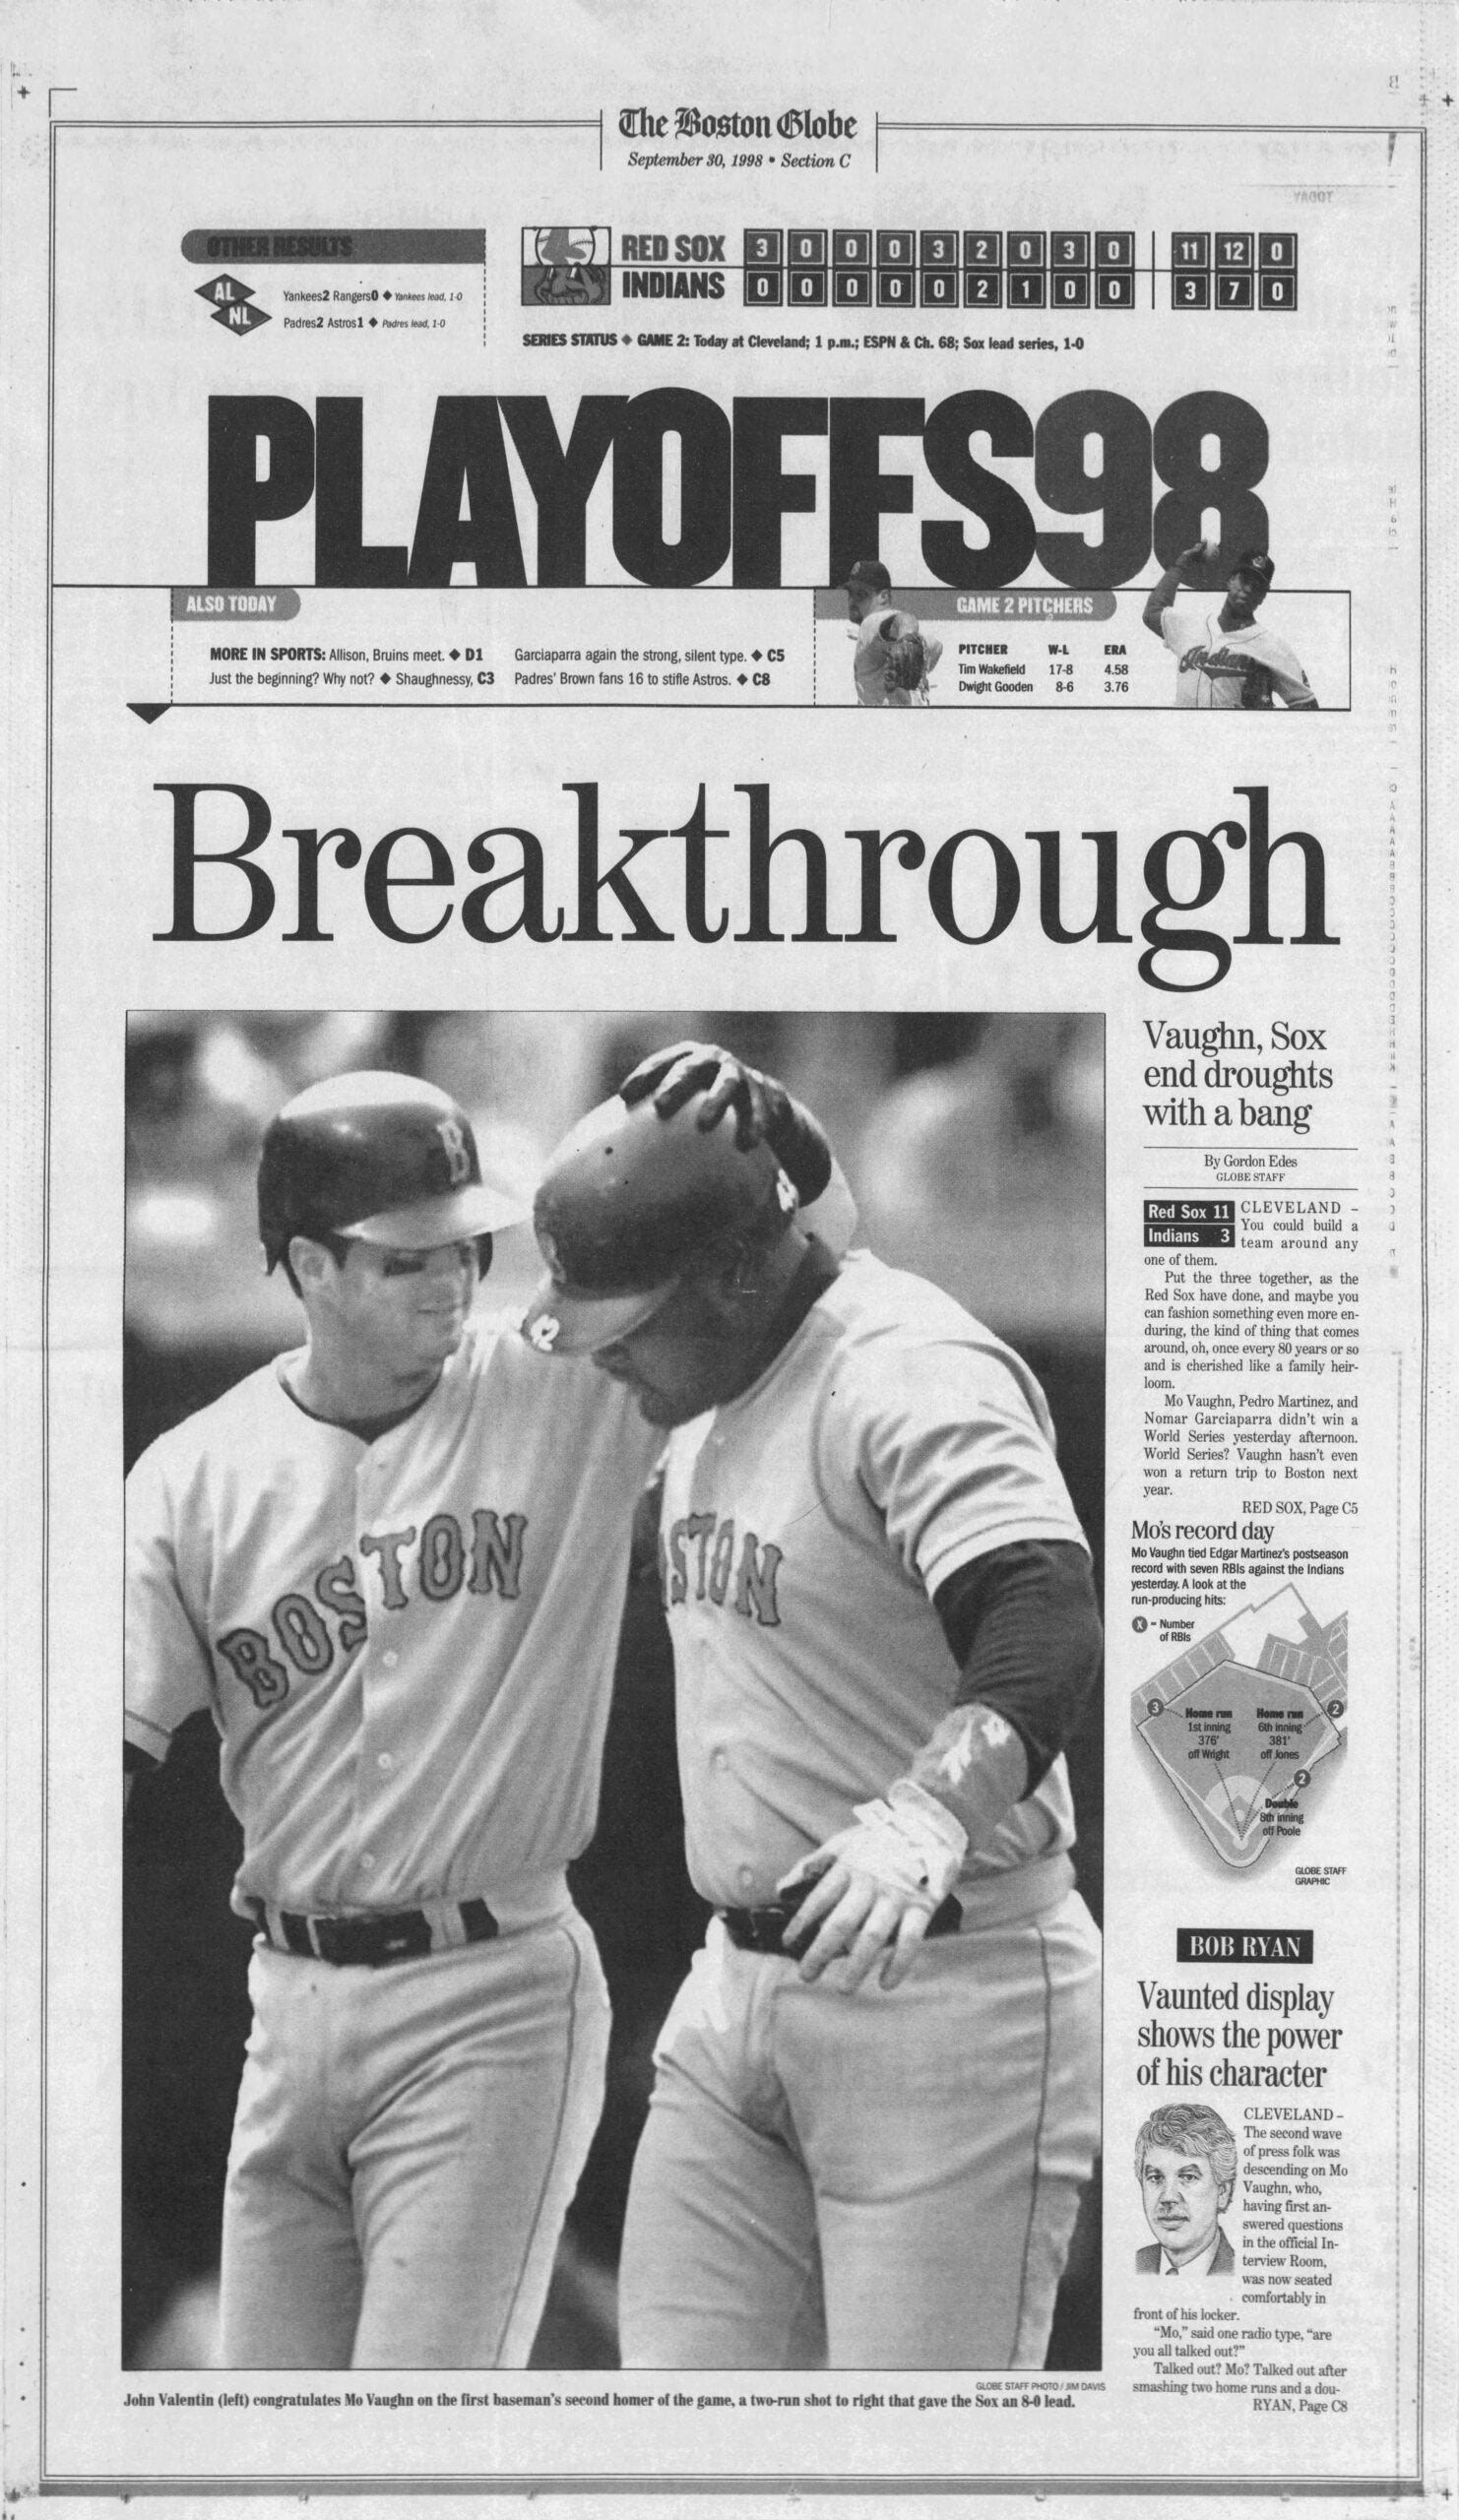 Red Sox 1998 Playoffs Mo Vaughn